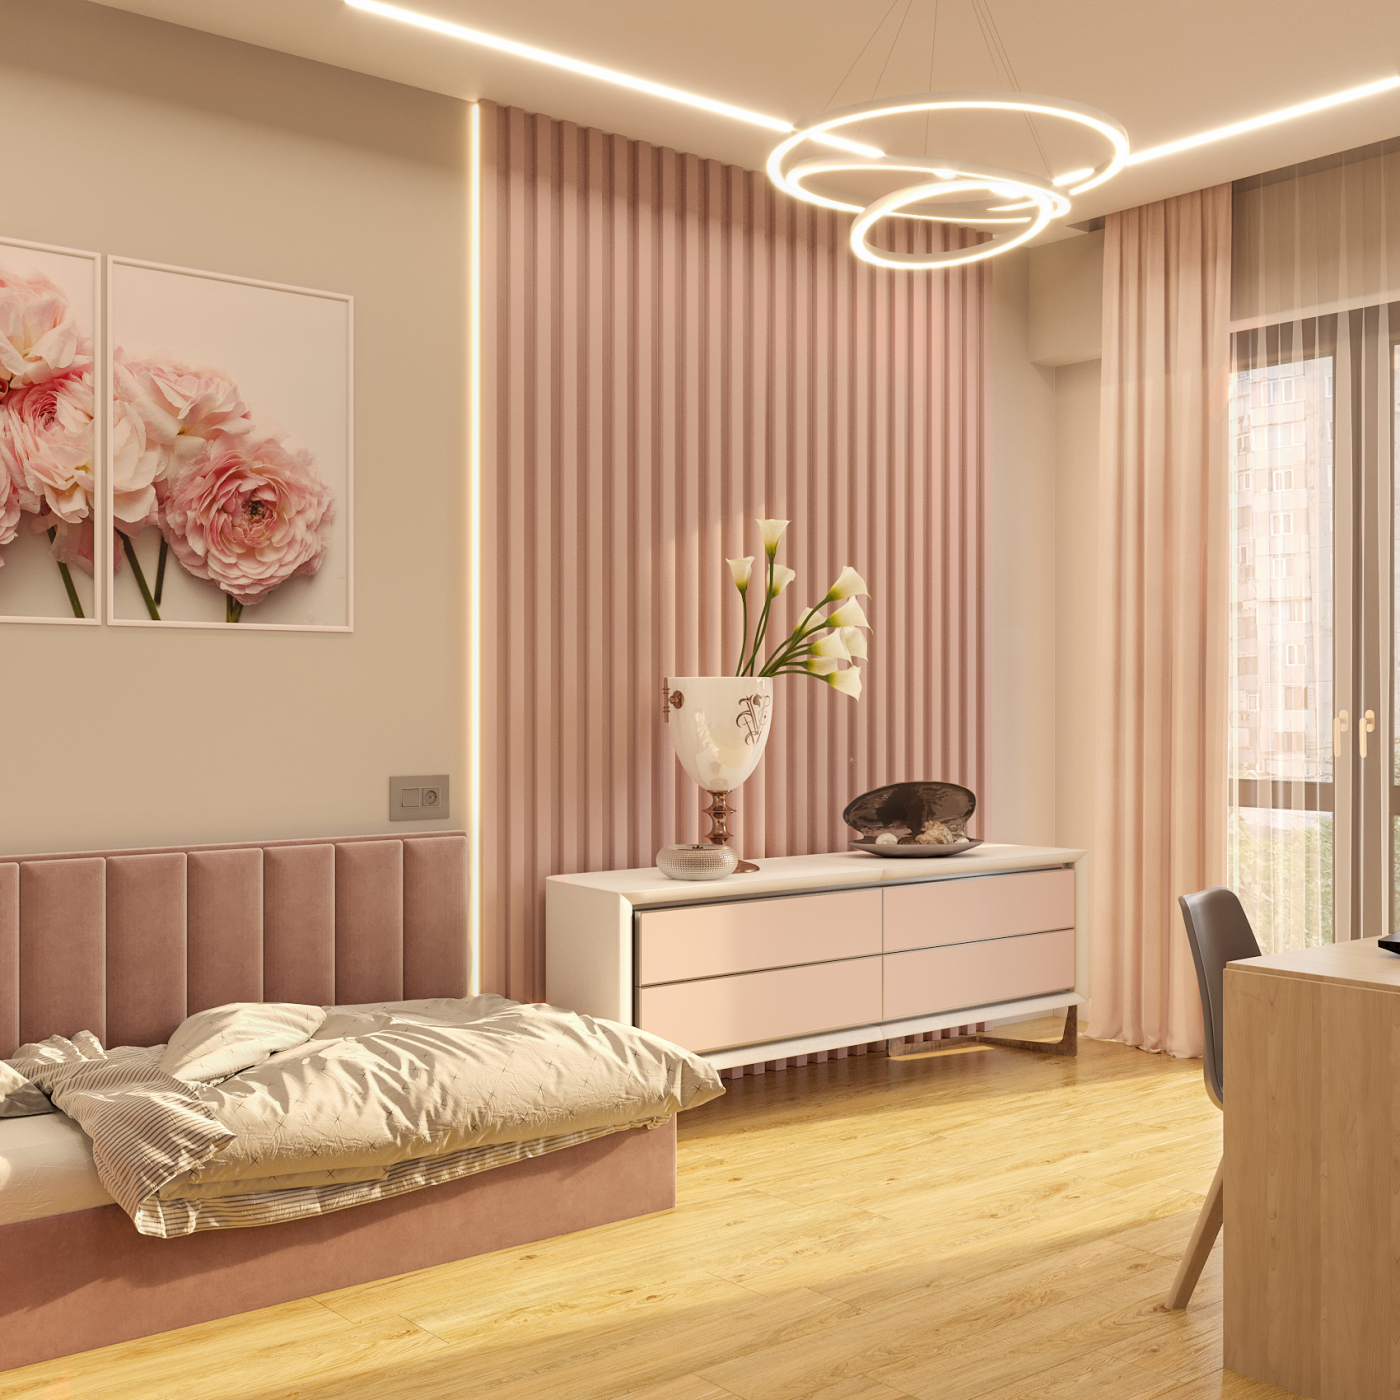 bedroom in pink tones